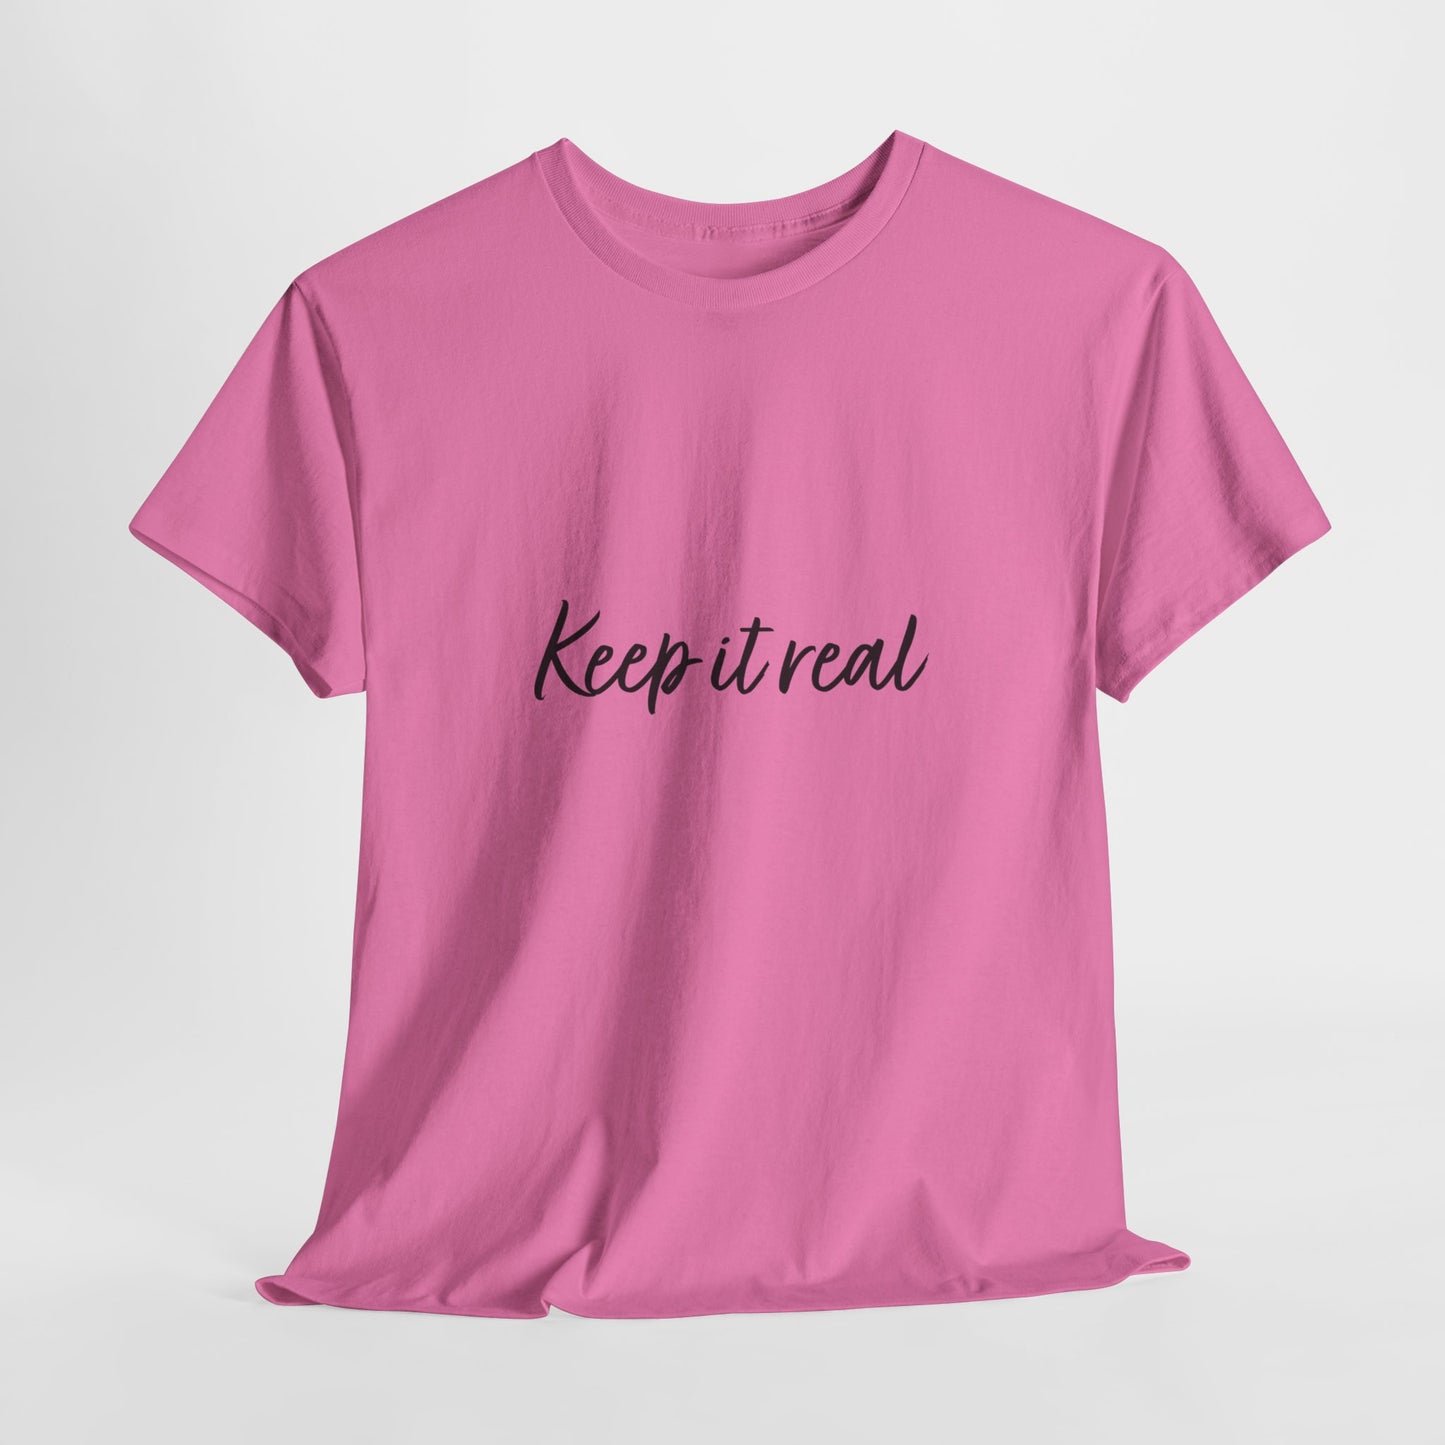 Keep it real T-Shirt